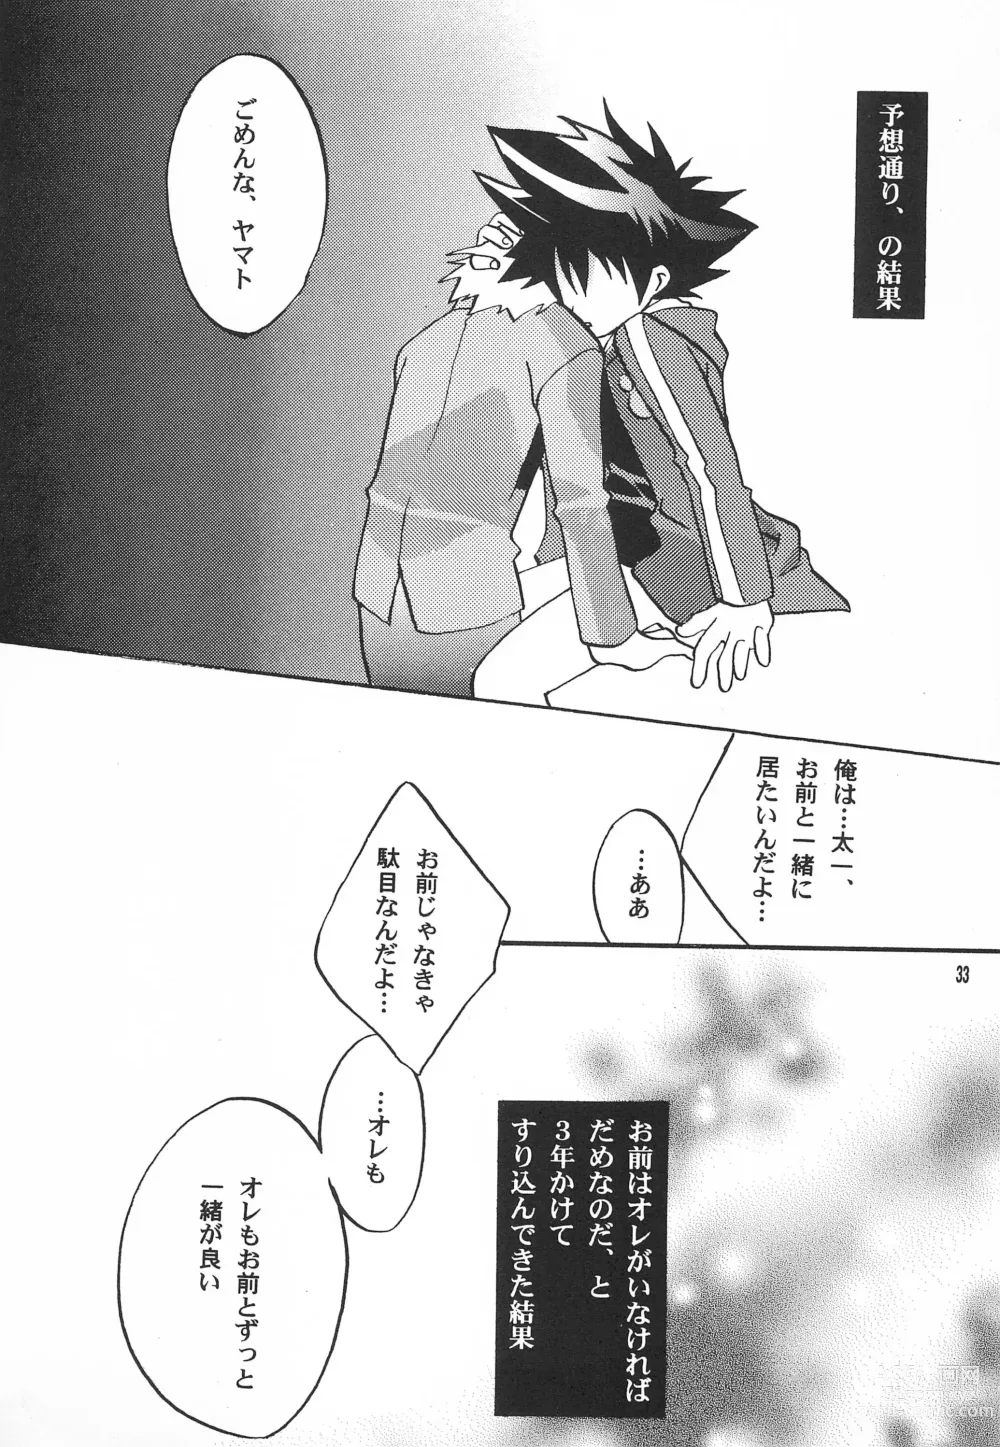 Page 35 of doujinshi Utsukushiki Samazama no Yume